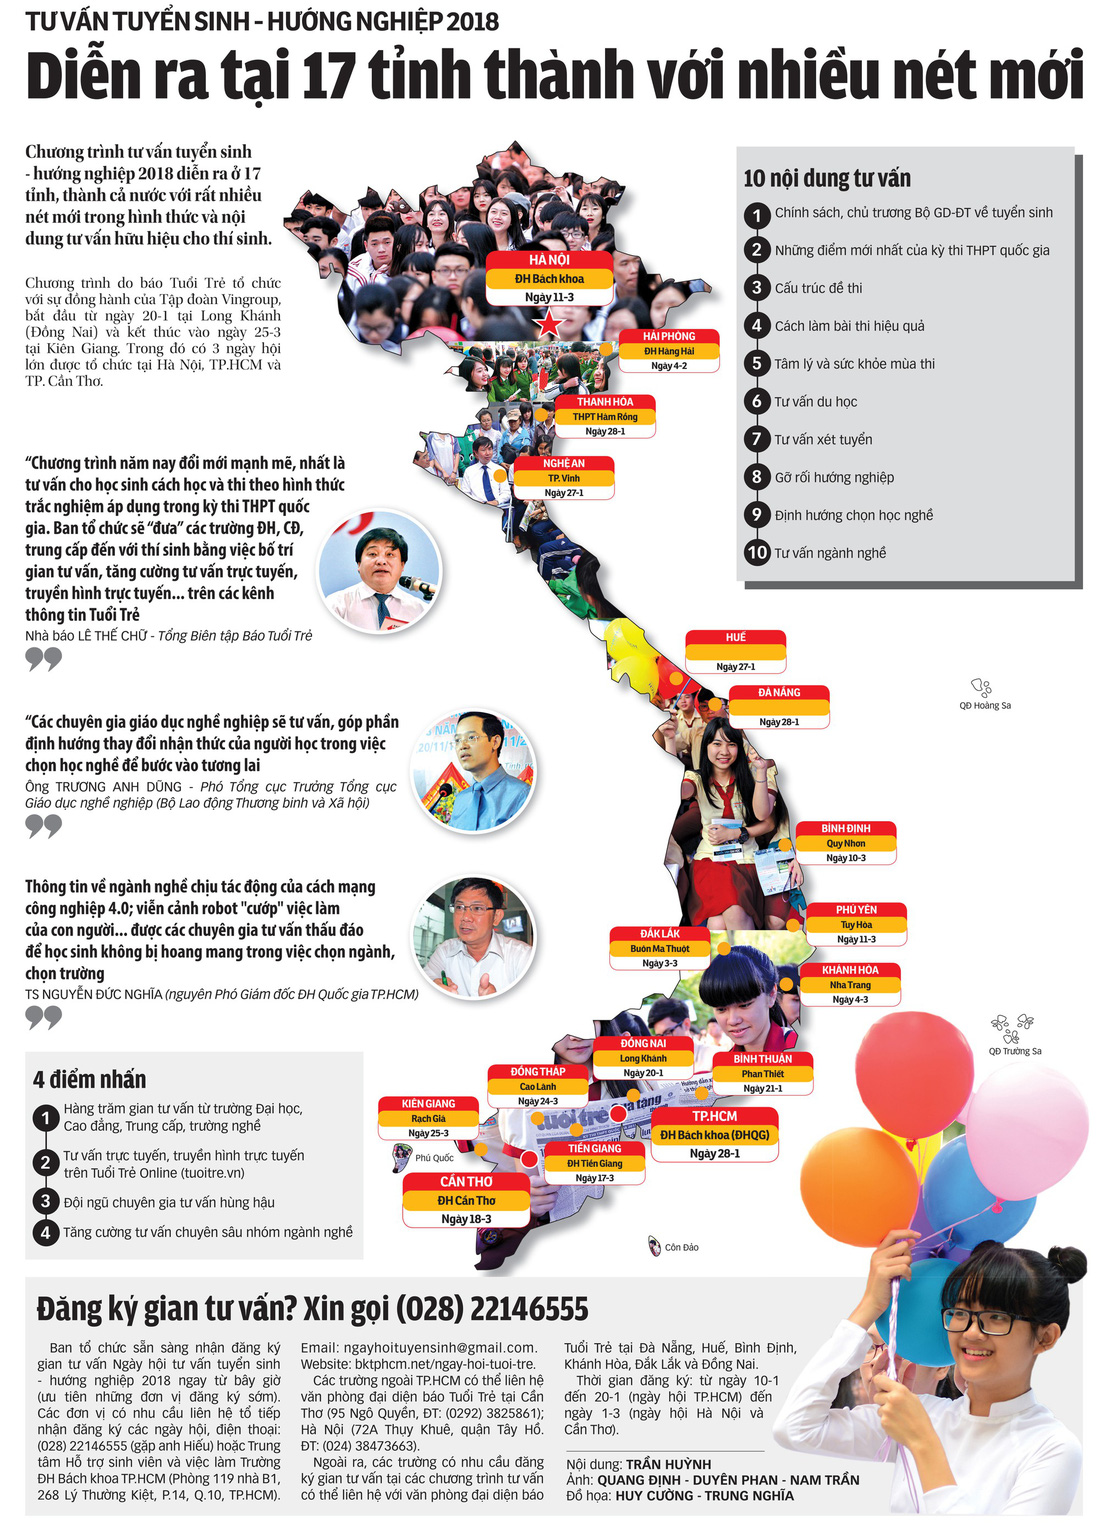 Từ 20-1, Tuổi Trẻ tư vấn tuyển sinh-hướng nghiệp tại 17 tỉnh thành - Ảnh 2.